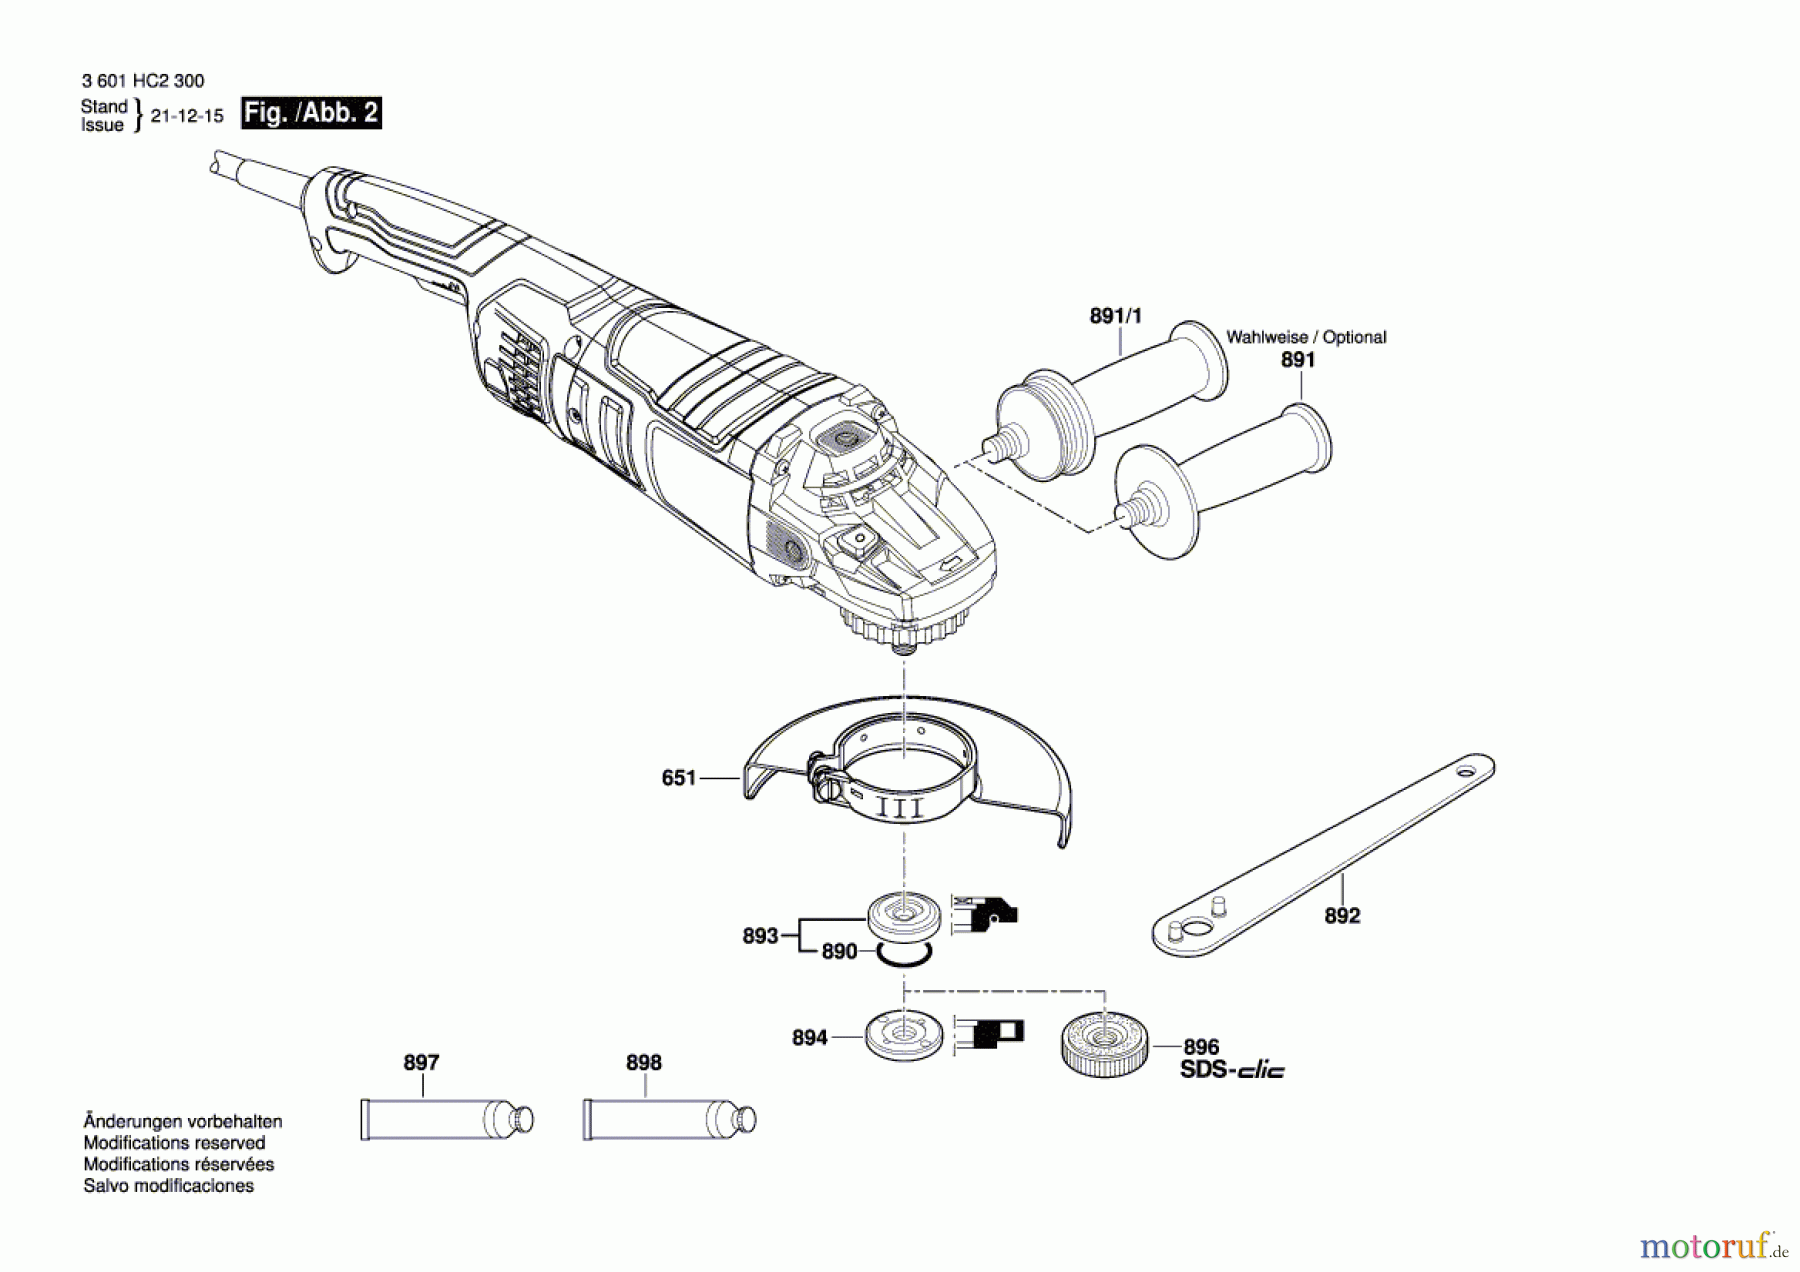  Bosch Werkzeug Winkelschleifer GWS 24-230 PZ Seite 2